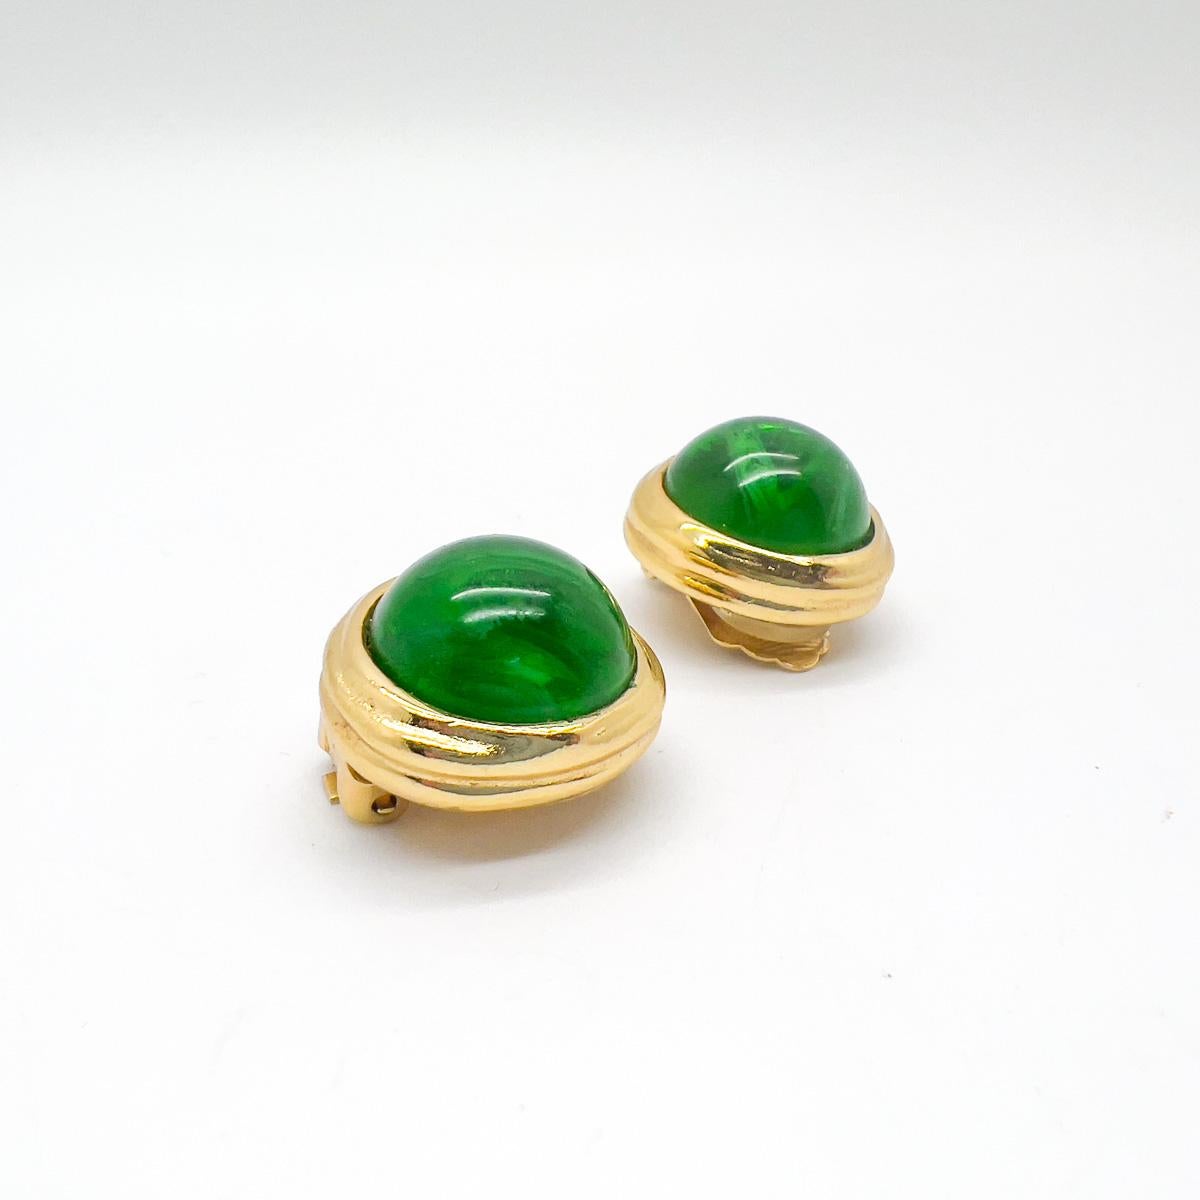 Ein Paar Vintage Dior Emerald Cabochon Ohrringe. Erhabene, saftige und reichhaltige Smaragd-Cabochons in einer schlichten Galerie-Fassung aus glänzendem Gold. Das perfekte Paar Couture-Clips.
Mit Archivstücken aus ihrer eigenen Dior-Kollektion, die